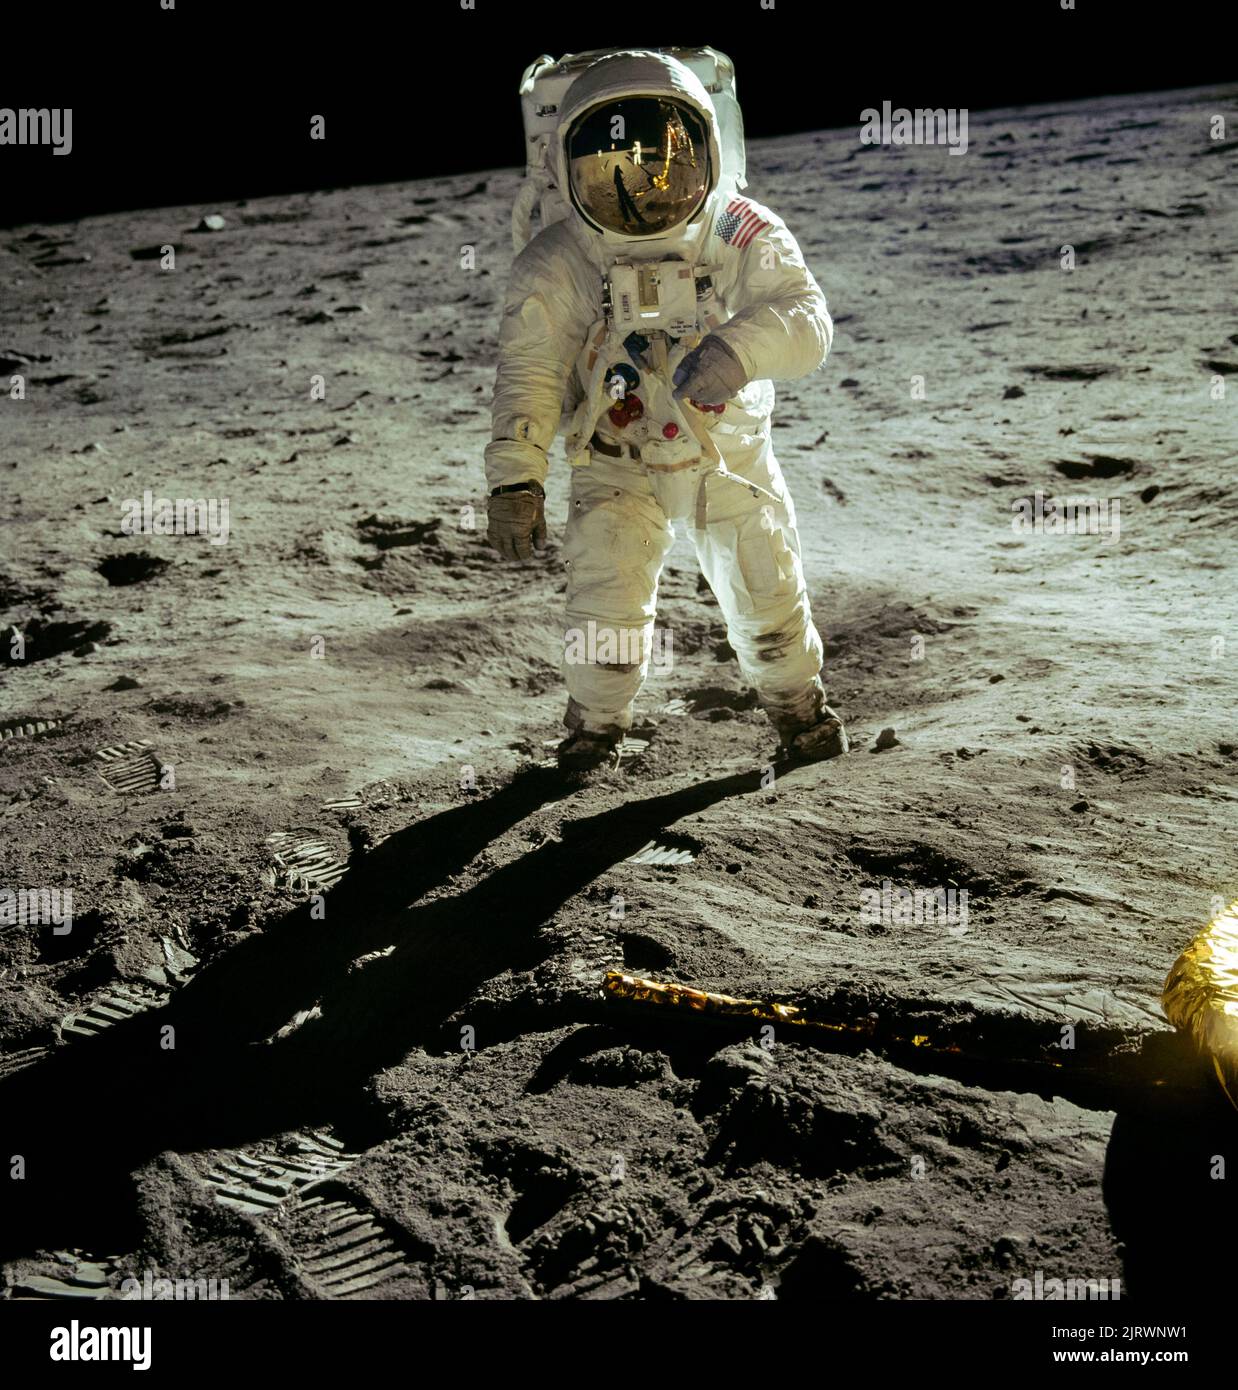 MARE DI TRANQUILLITÀ, LA LUNA, TERRA - 20 luglio 1969 - astronauta Edwin e Aldrin Jr, modulo lunare pilota, passeggiate sulla superficie della Luna vicino alla gamba di Foto Stock